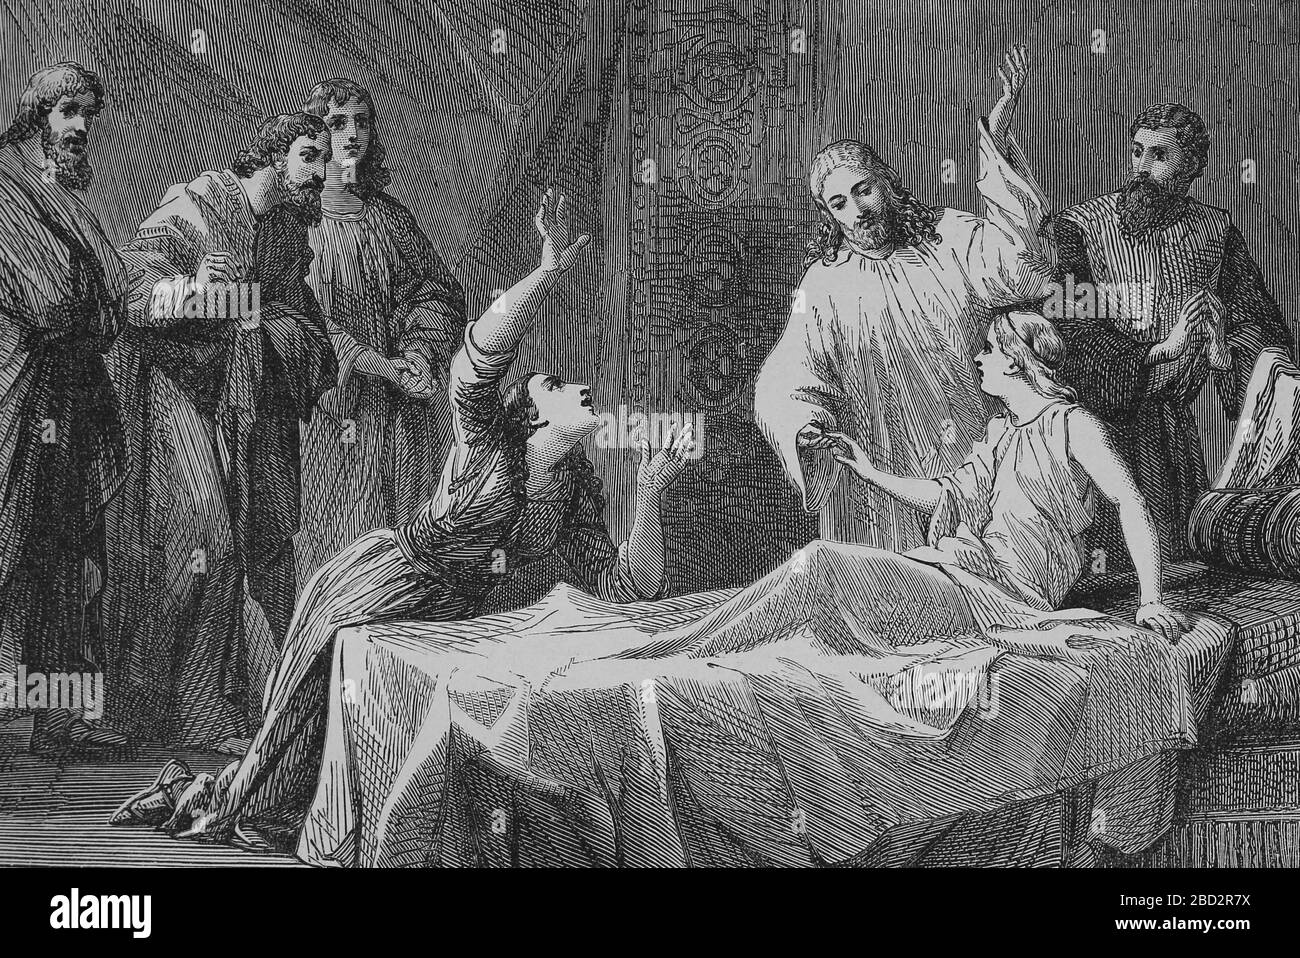 La crescita della figlia di Jairu. Miracolo di Gesù nei Vangeli Marco, Matthou e Luca. Incisione, 19 ° secolo. Foto Stock